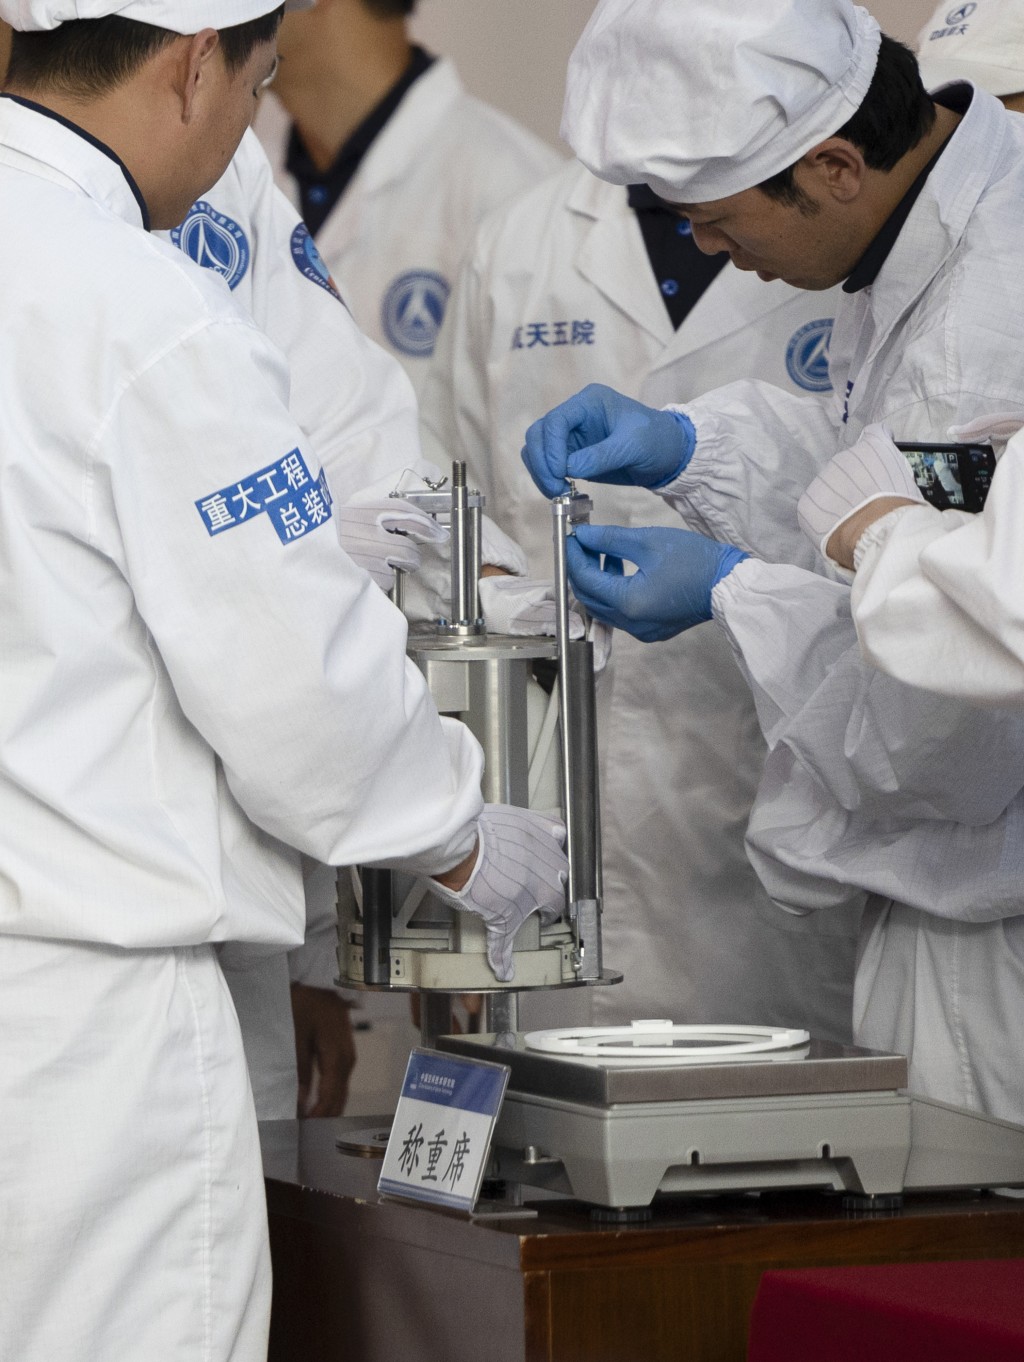 嫦娥六号月坏在北京开箱。